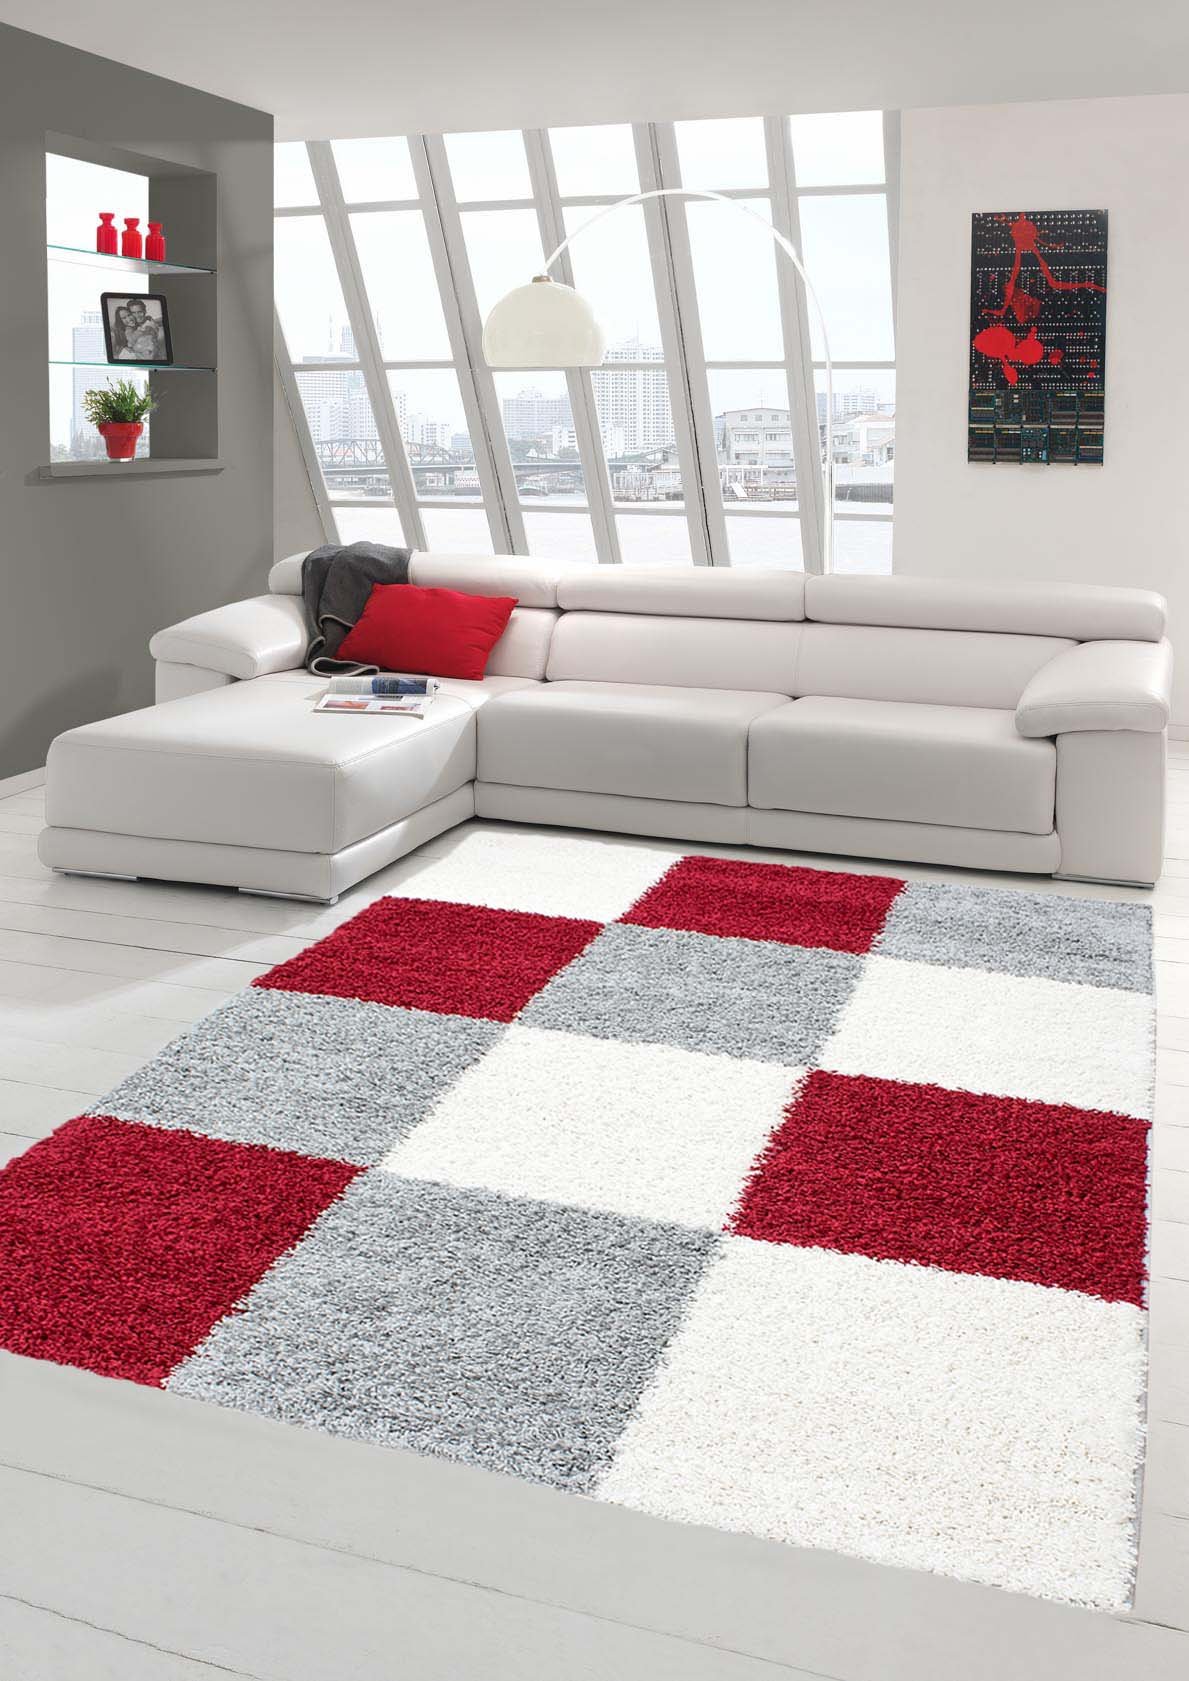 Shaggy Teppich Hochflor Langflor Teppich Wohnzimmer Teppich Gemustert in Karo Design Rot Grau Creme Größe 140x200 cm